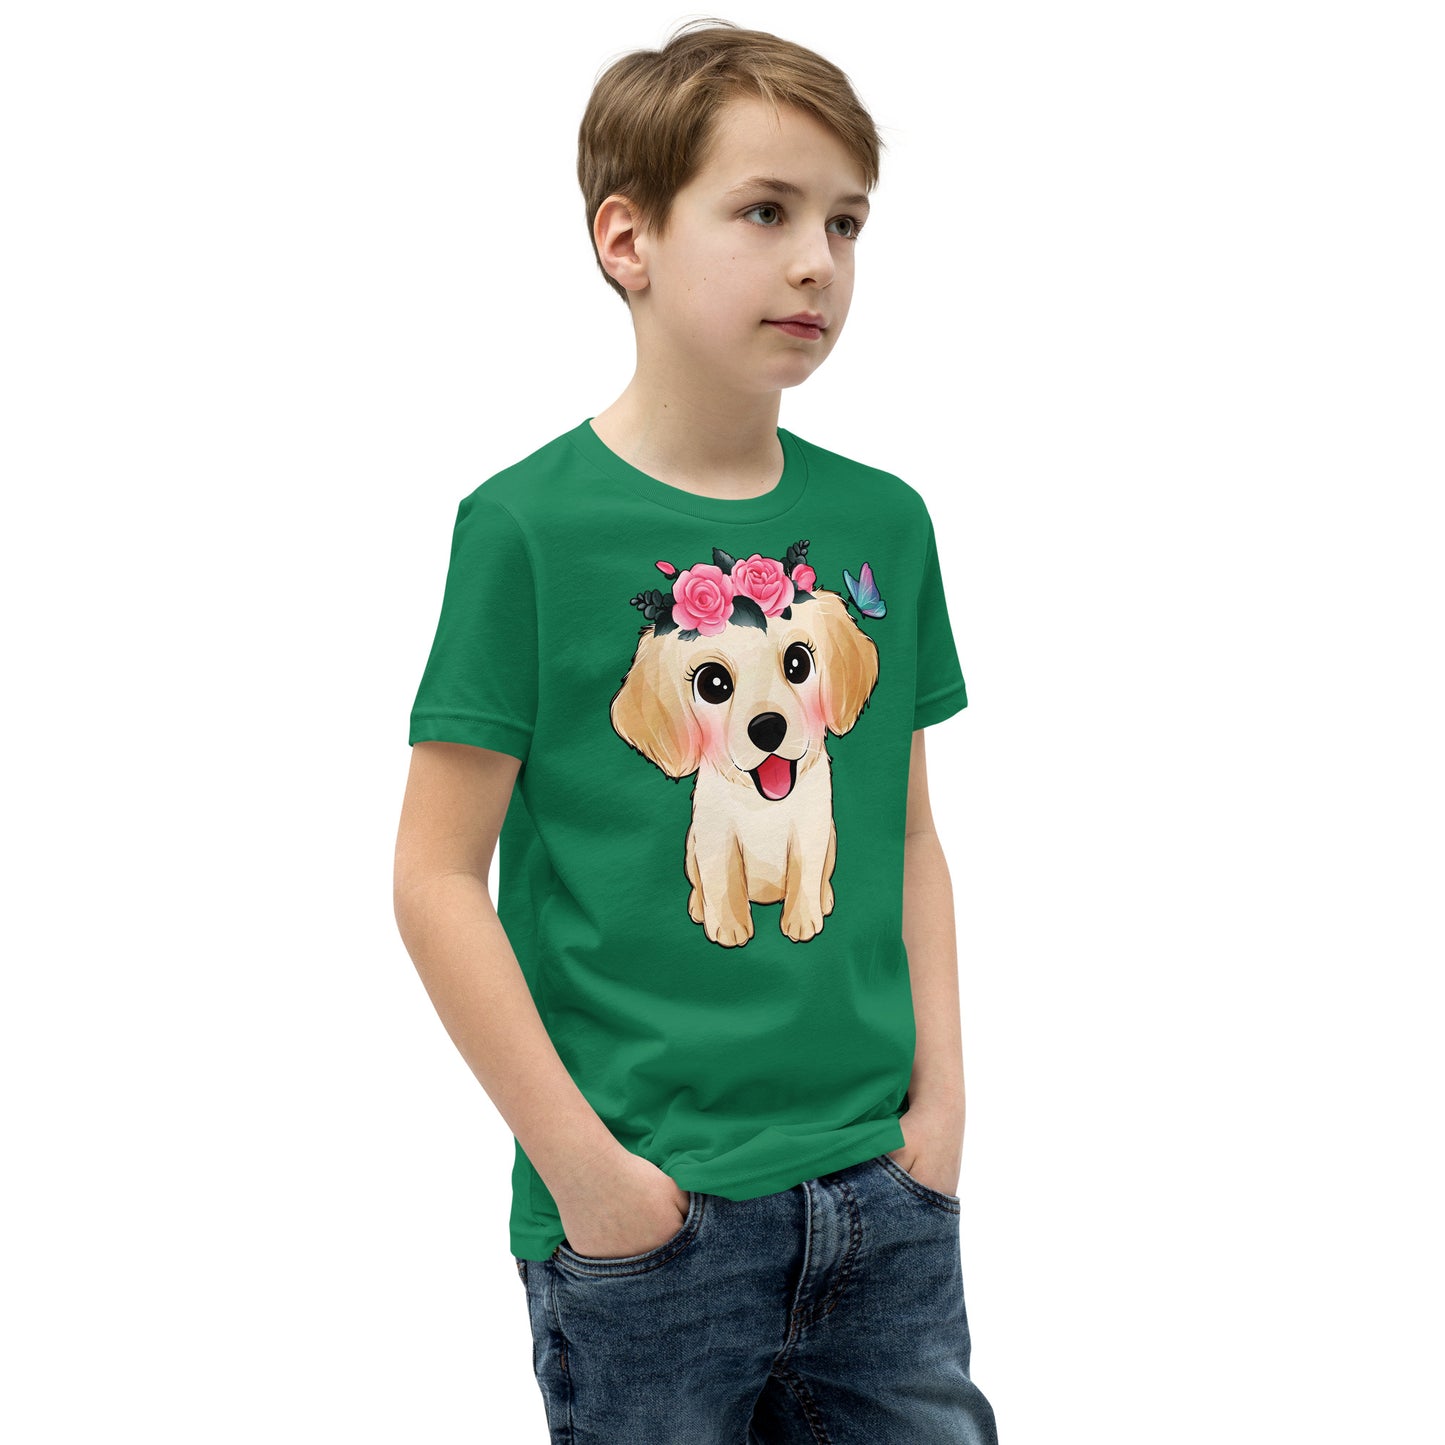 Cute Little Golden Retriever Dog T-shirt, No. 0359